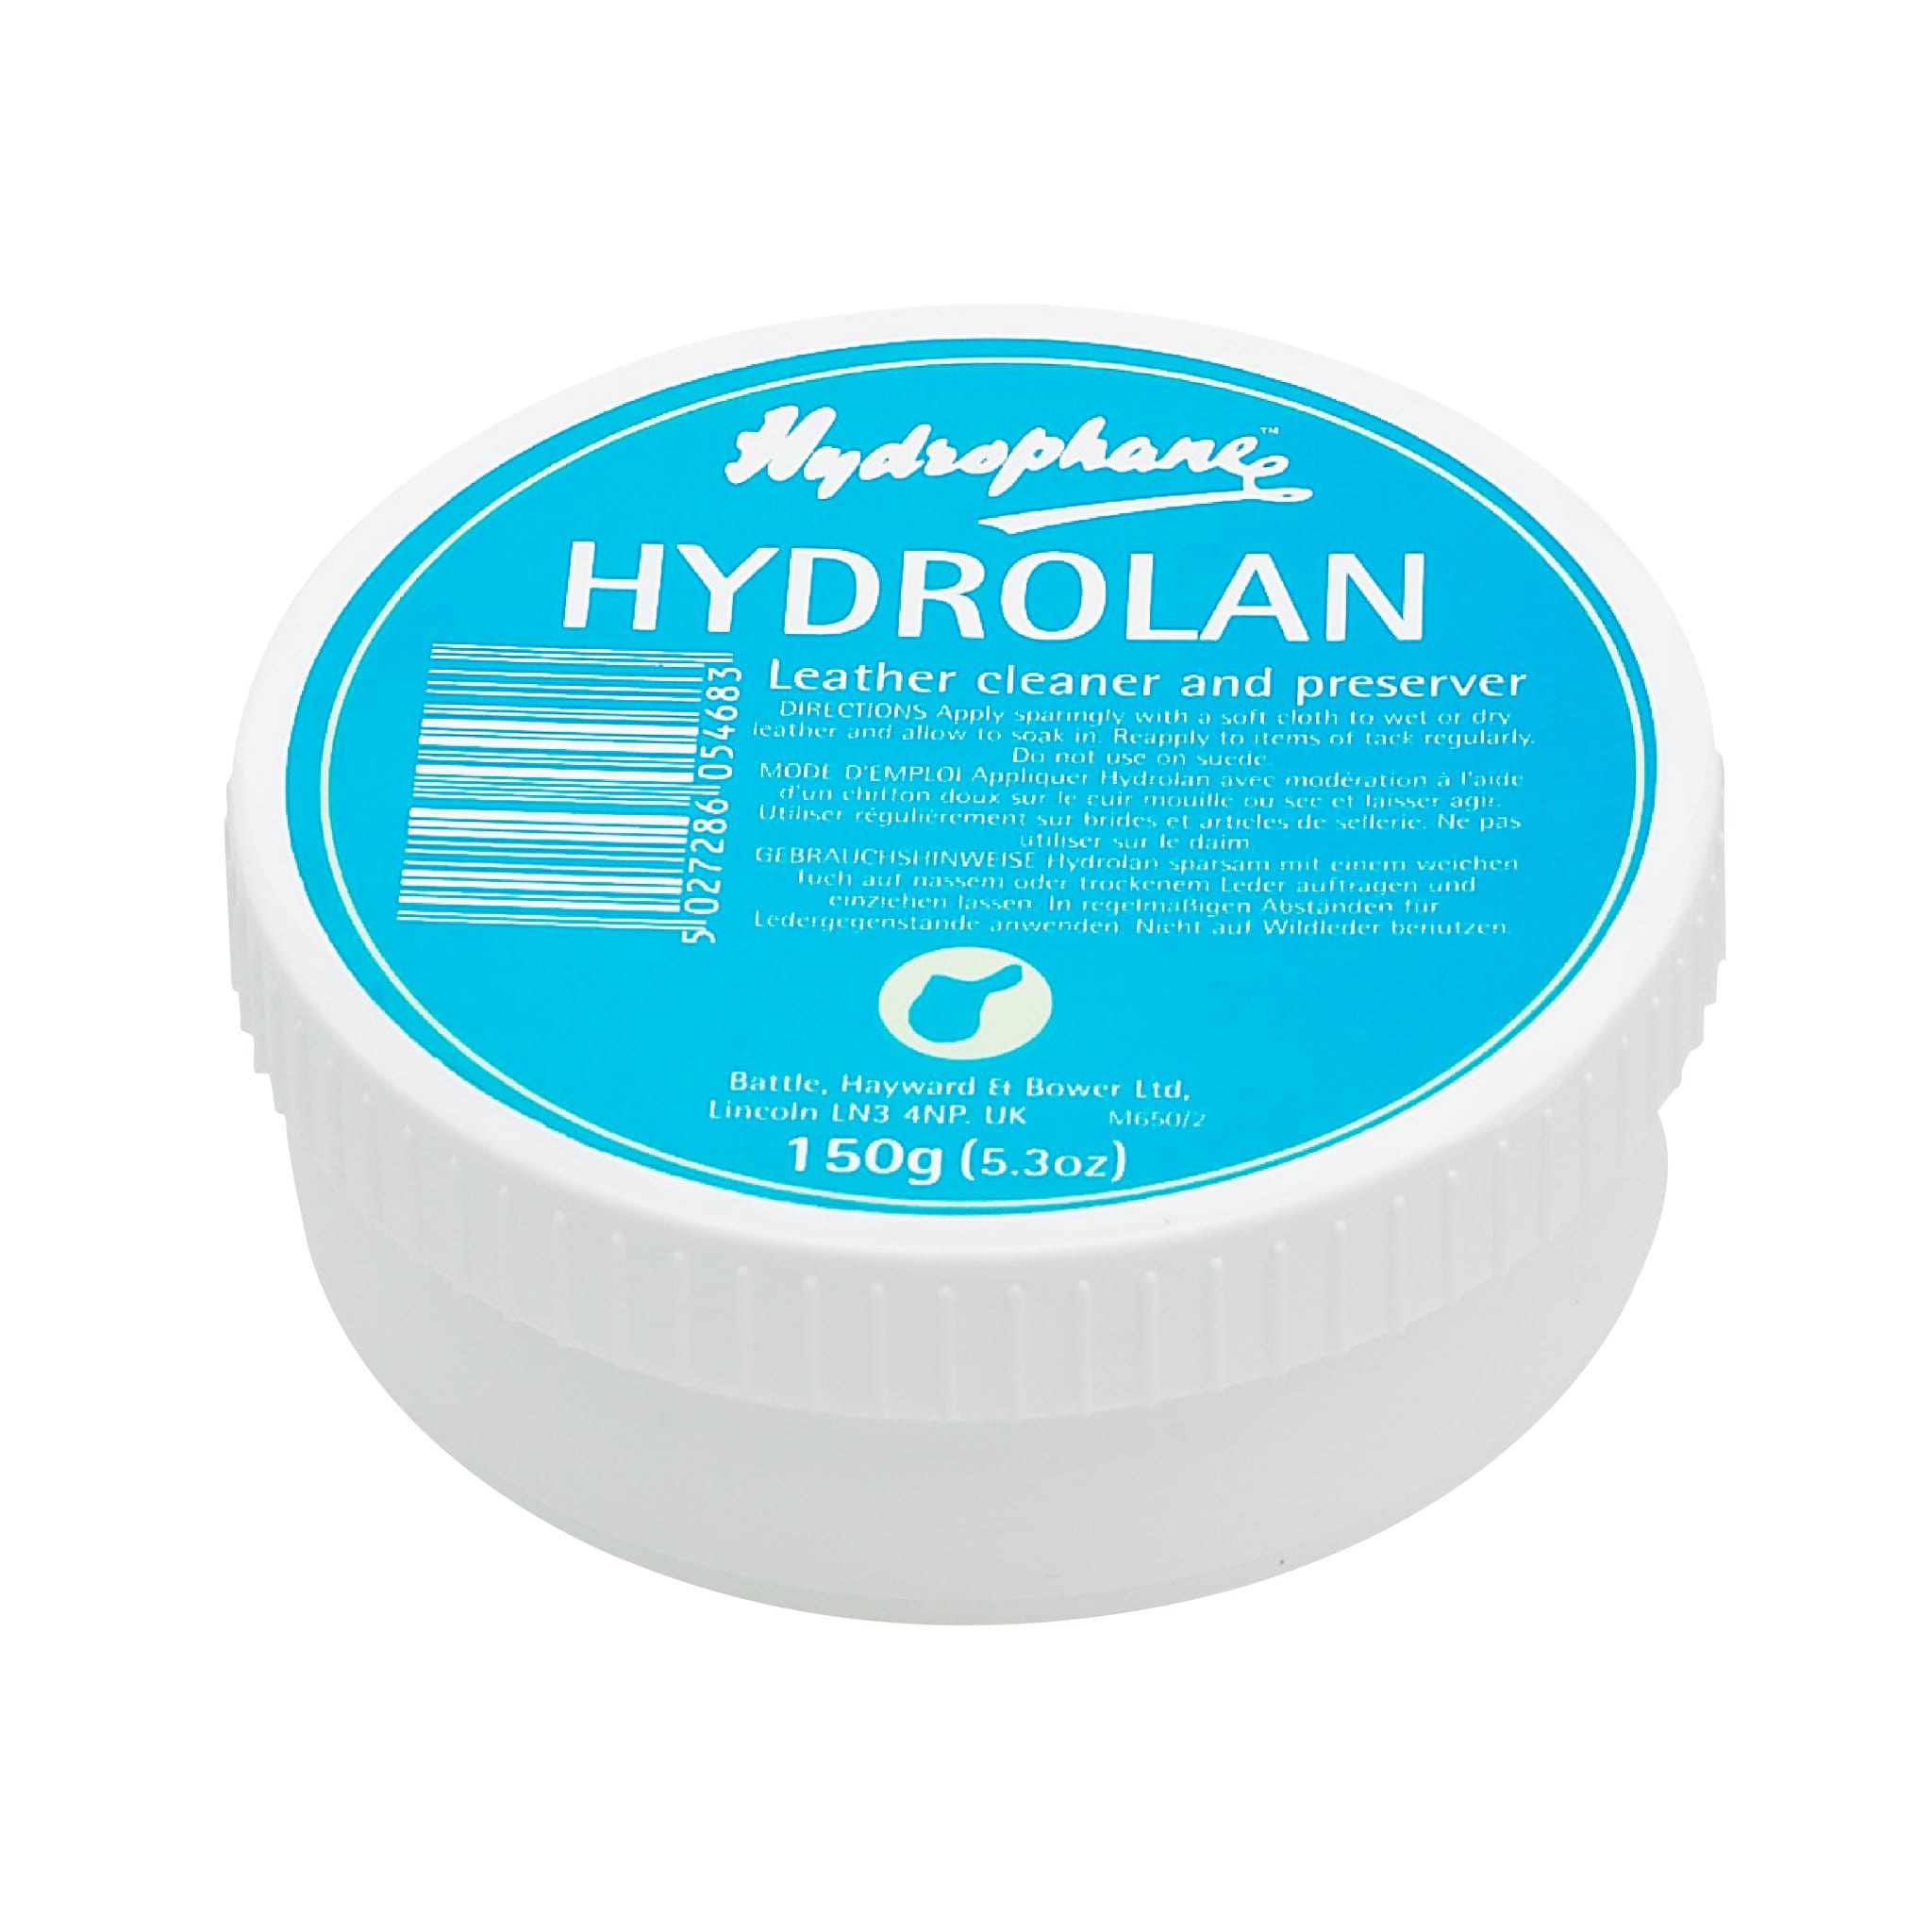 Hydrophane Hydrolan 5868